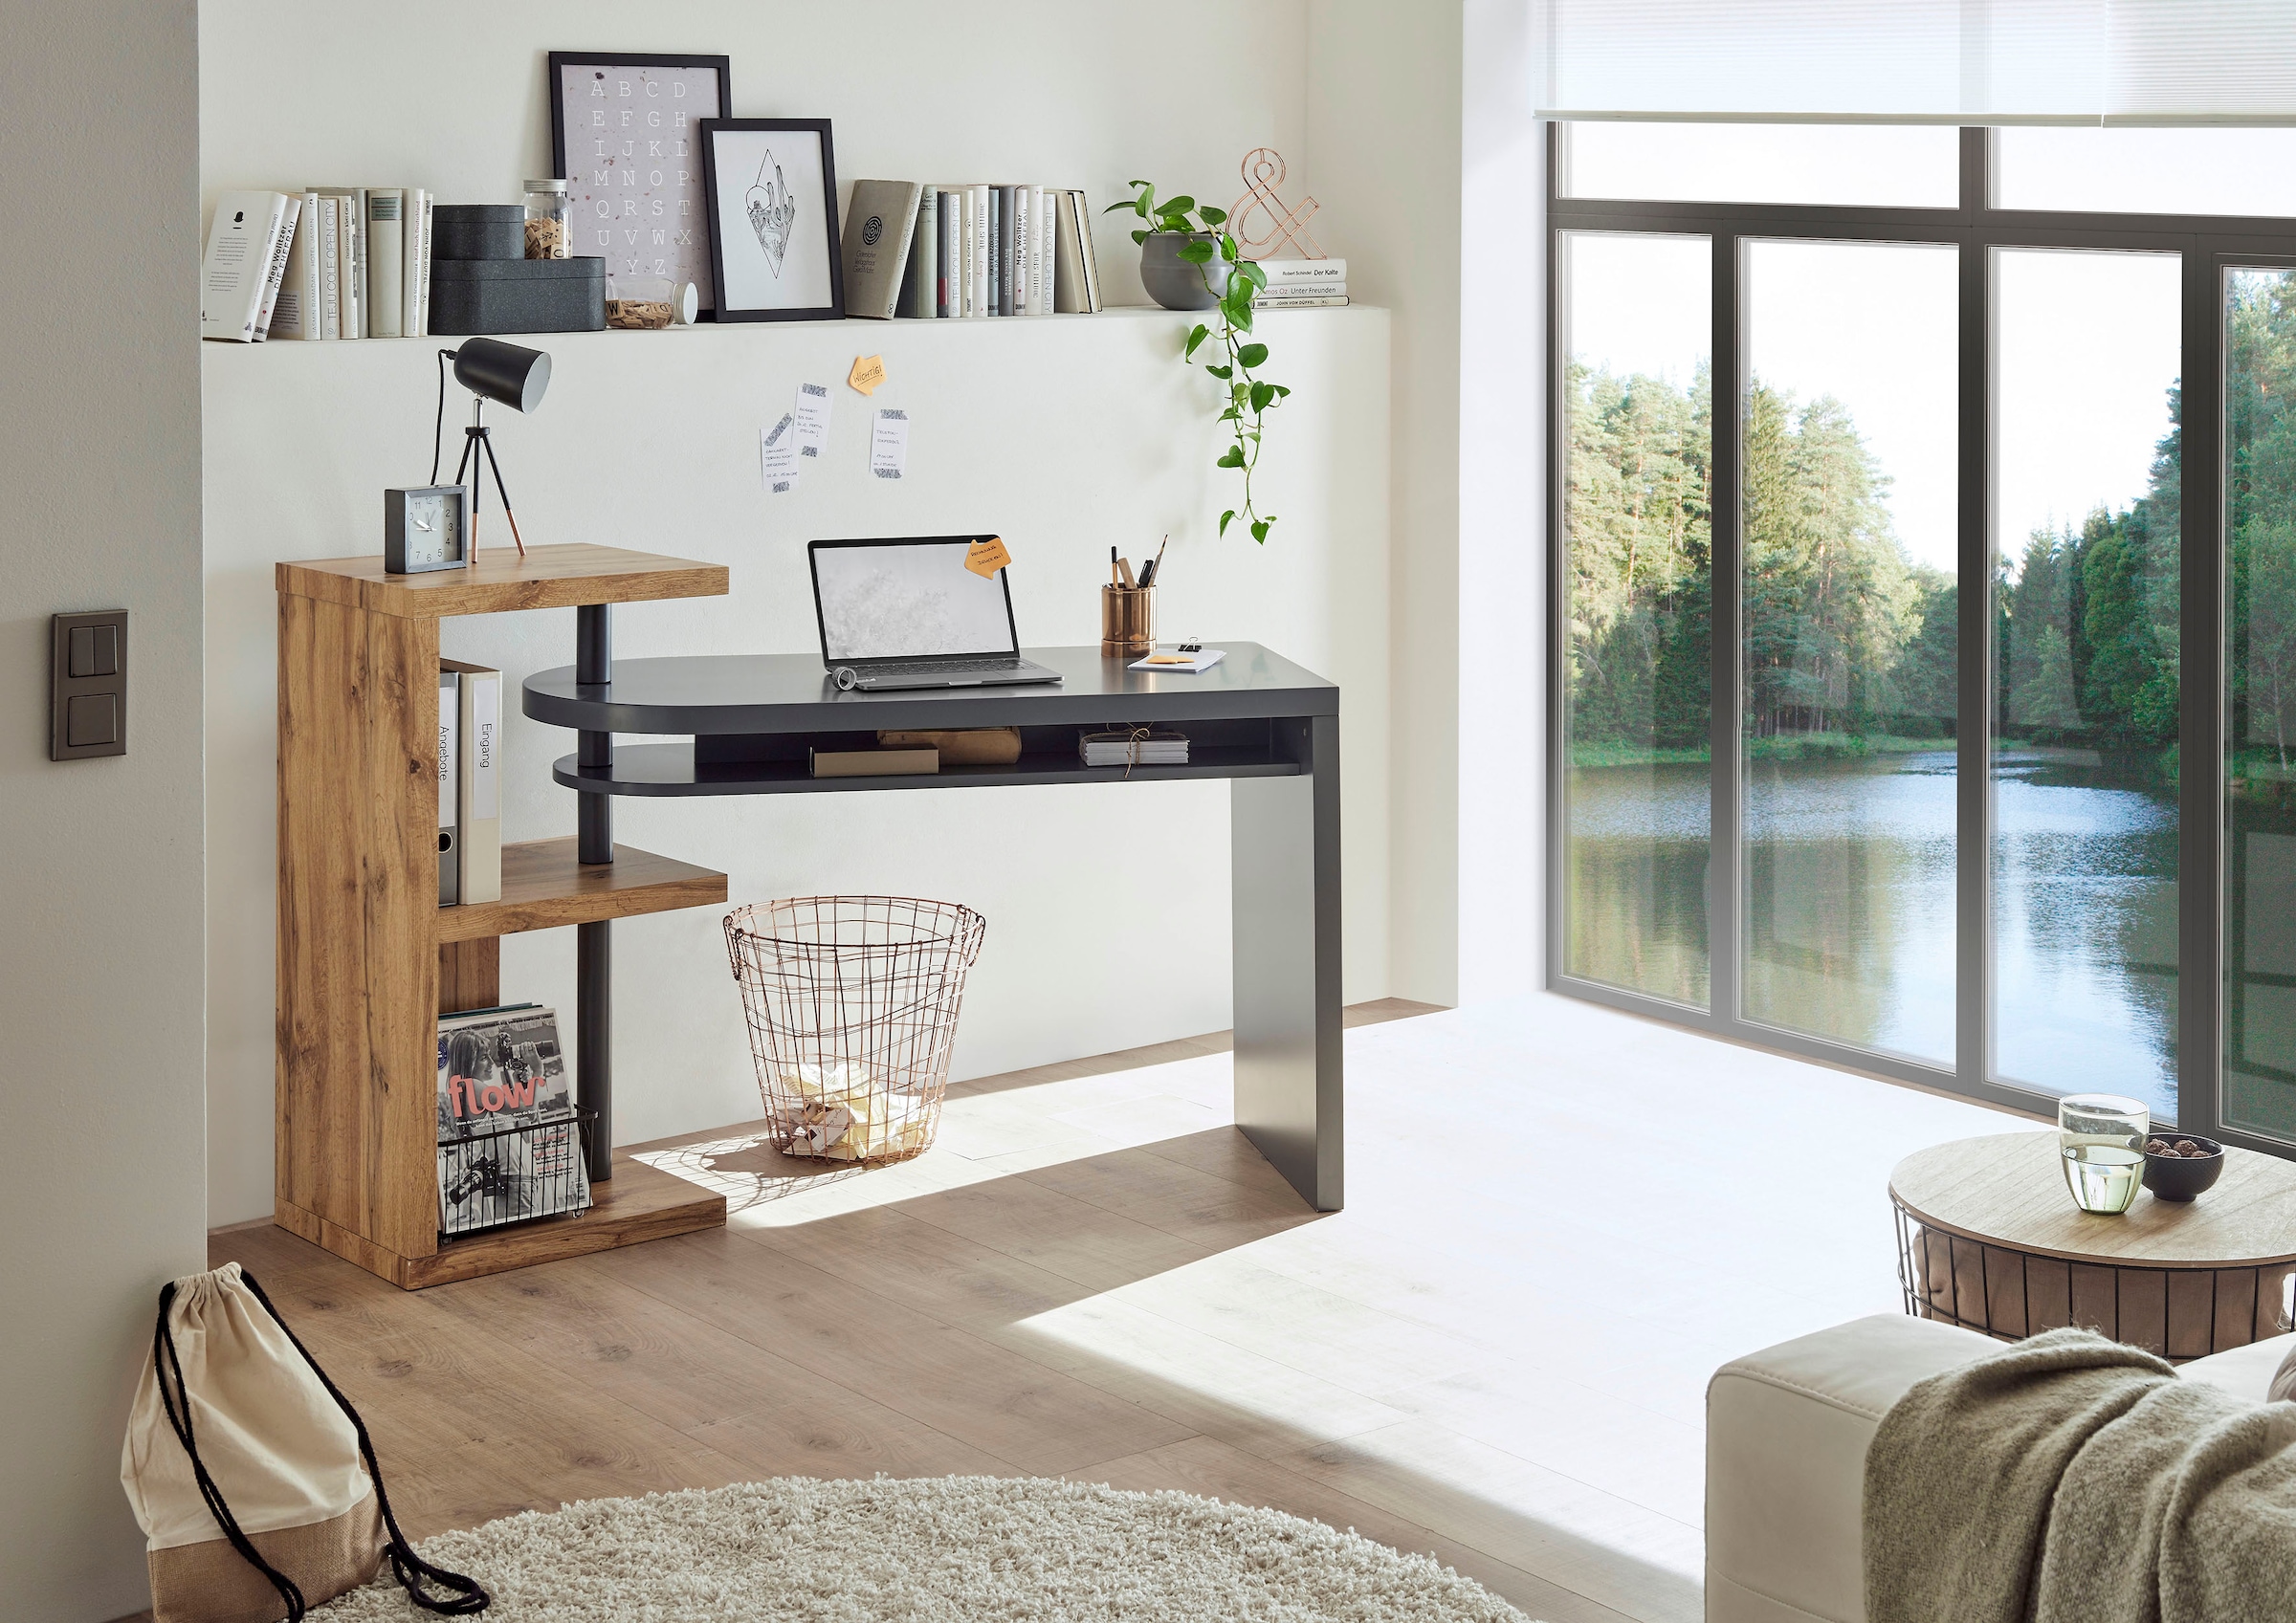 MCA furniture Schreibtisch »Moura«, mit Regalelment weiß hochglanz, Tischplatte schwenkbar, Breite 145 cm